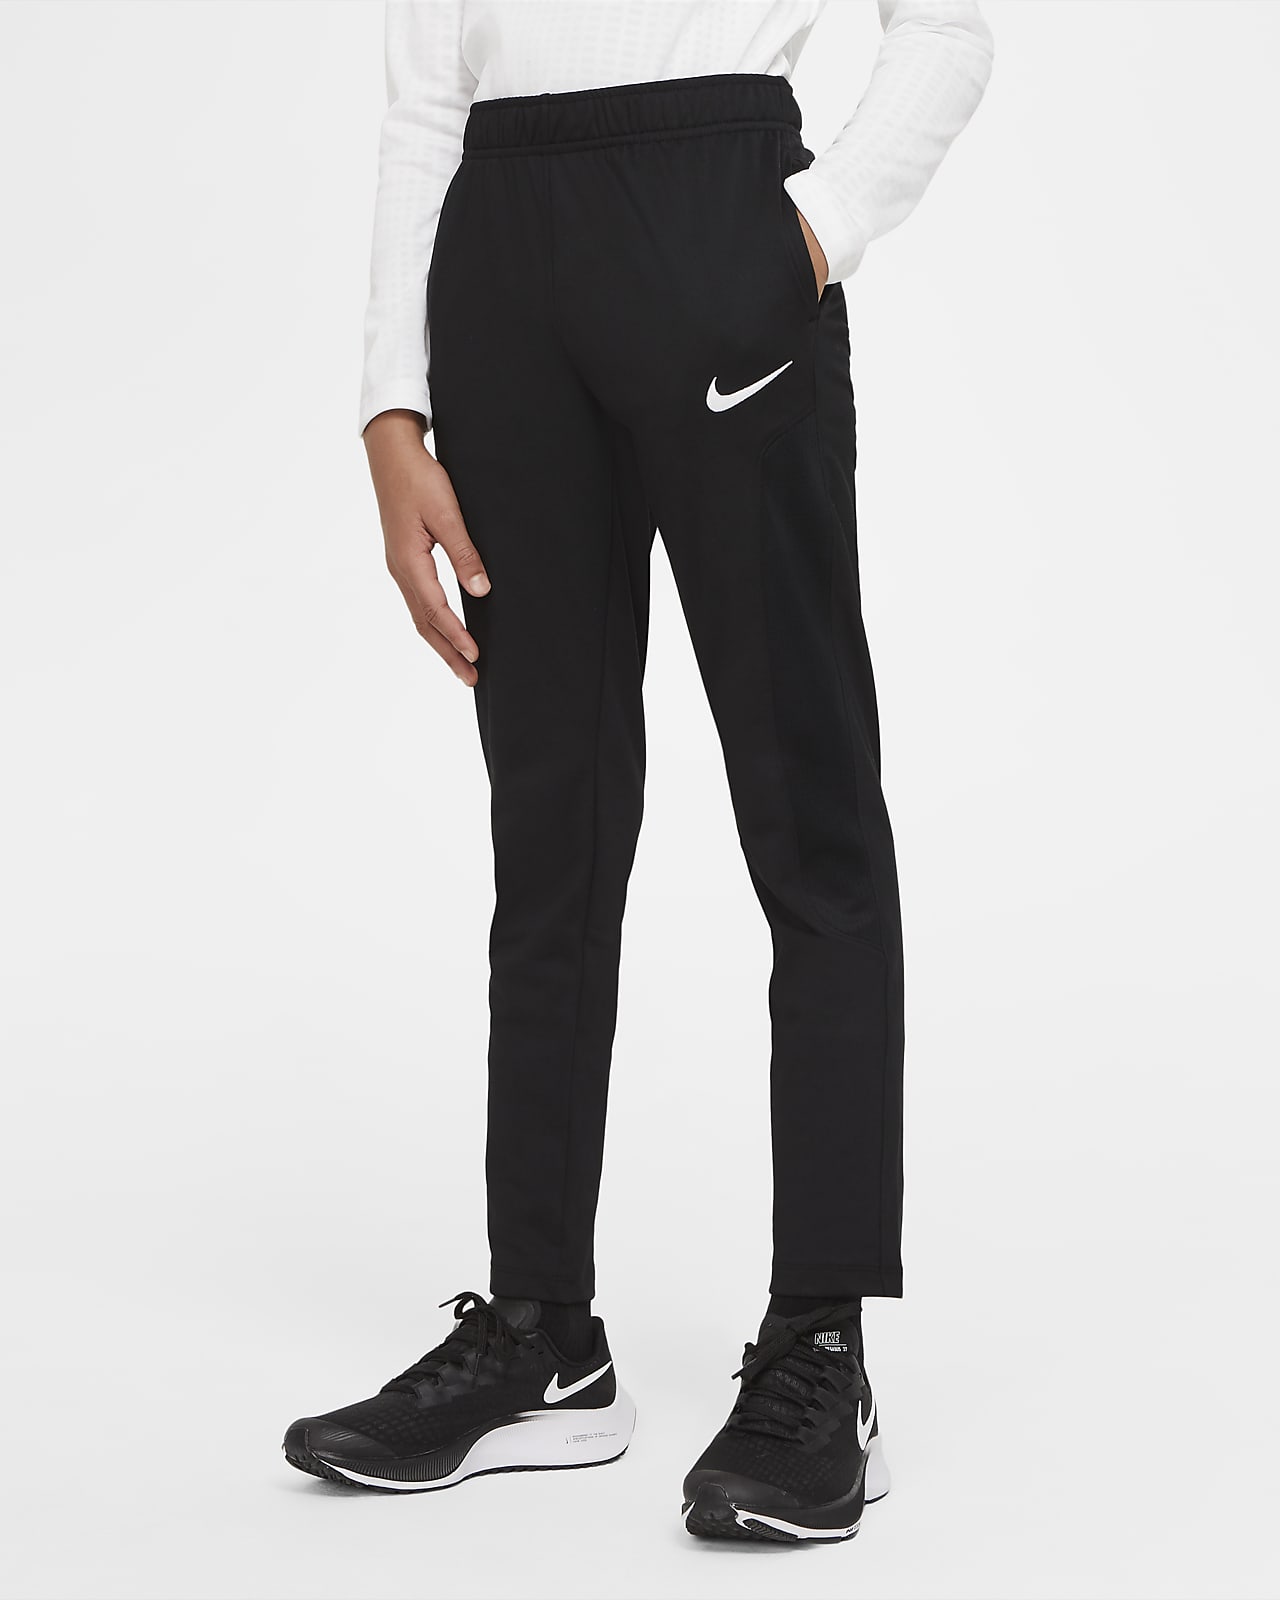 กางเกงเทรนนิ่งเด็กโต Nike Sport (ชาย)